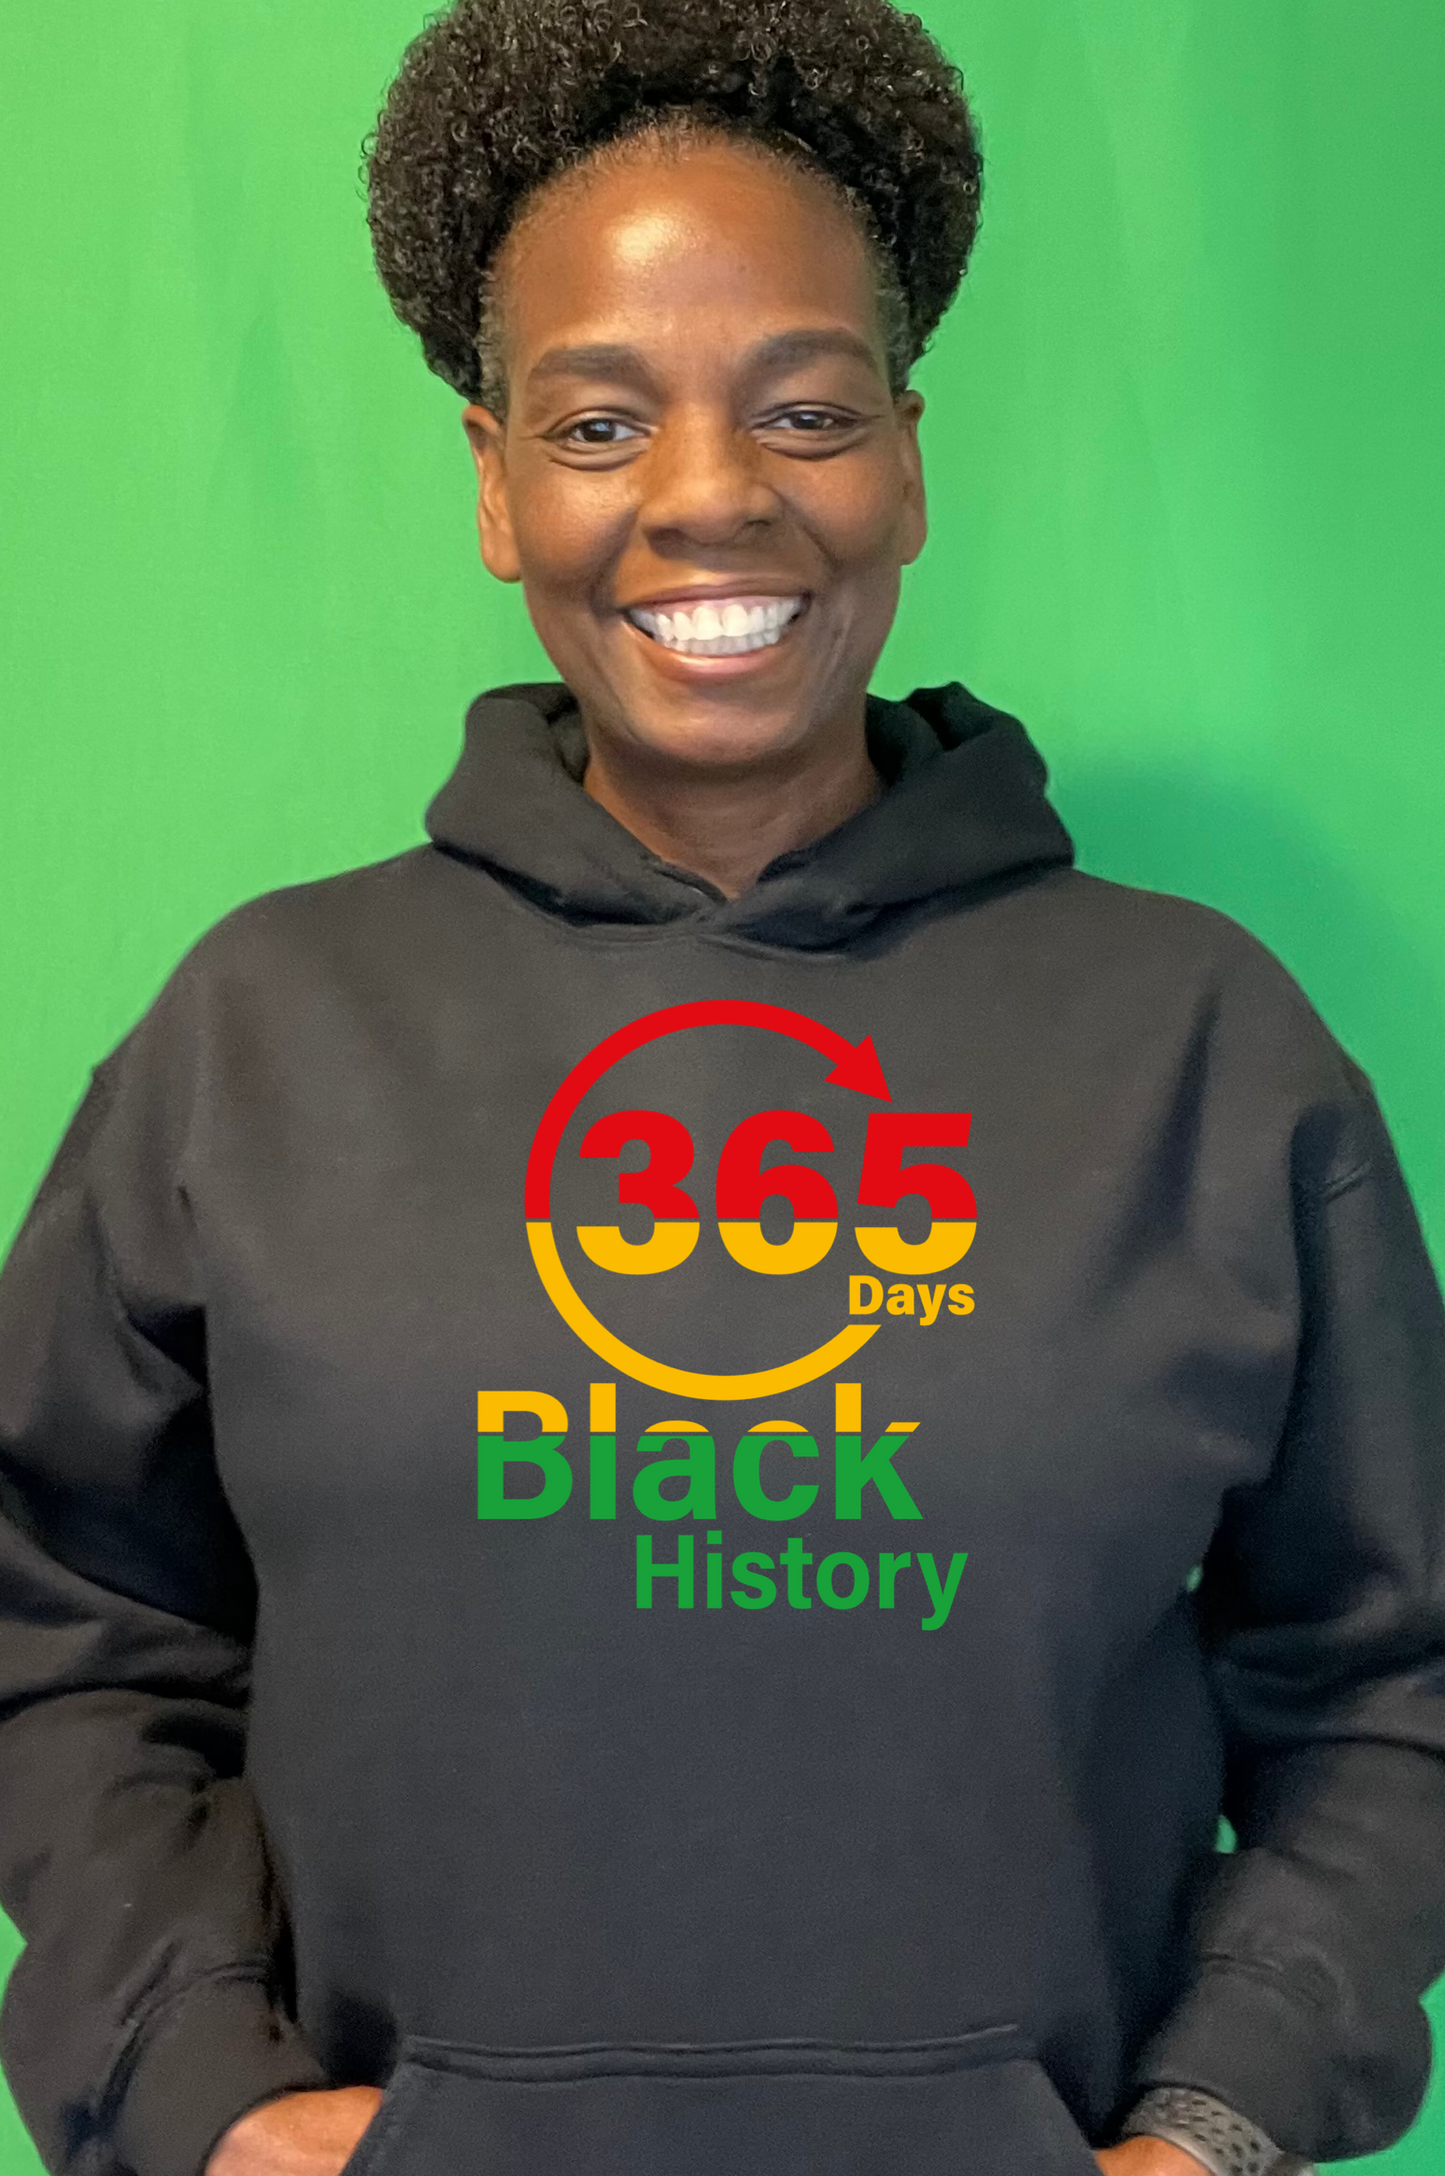 Black History 365 Hoodie